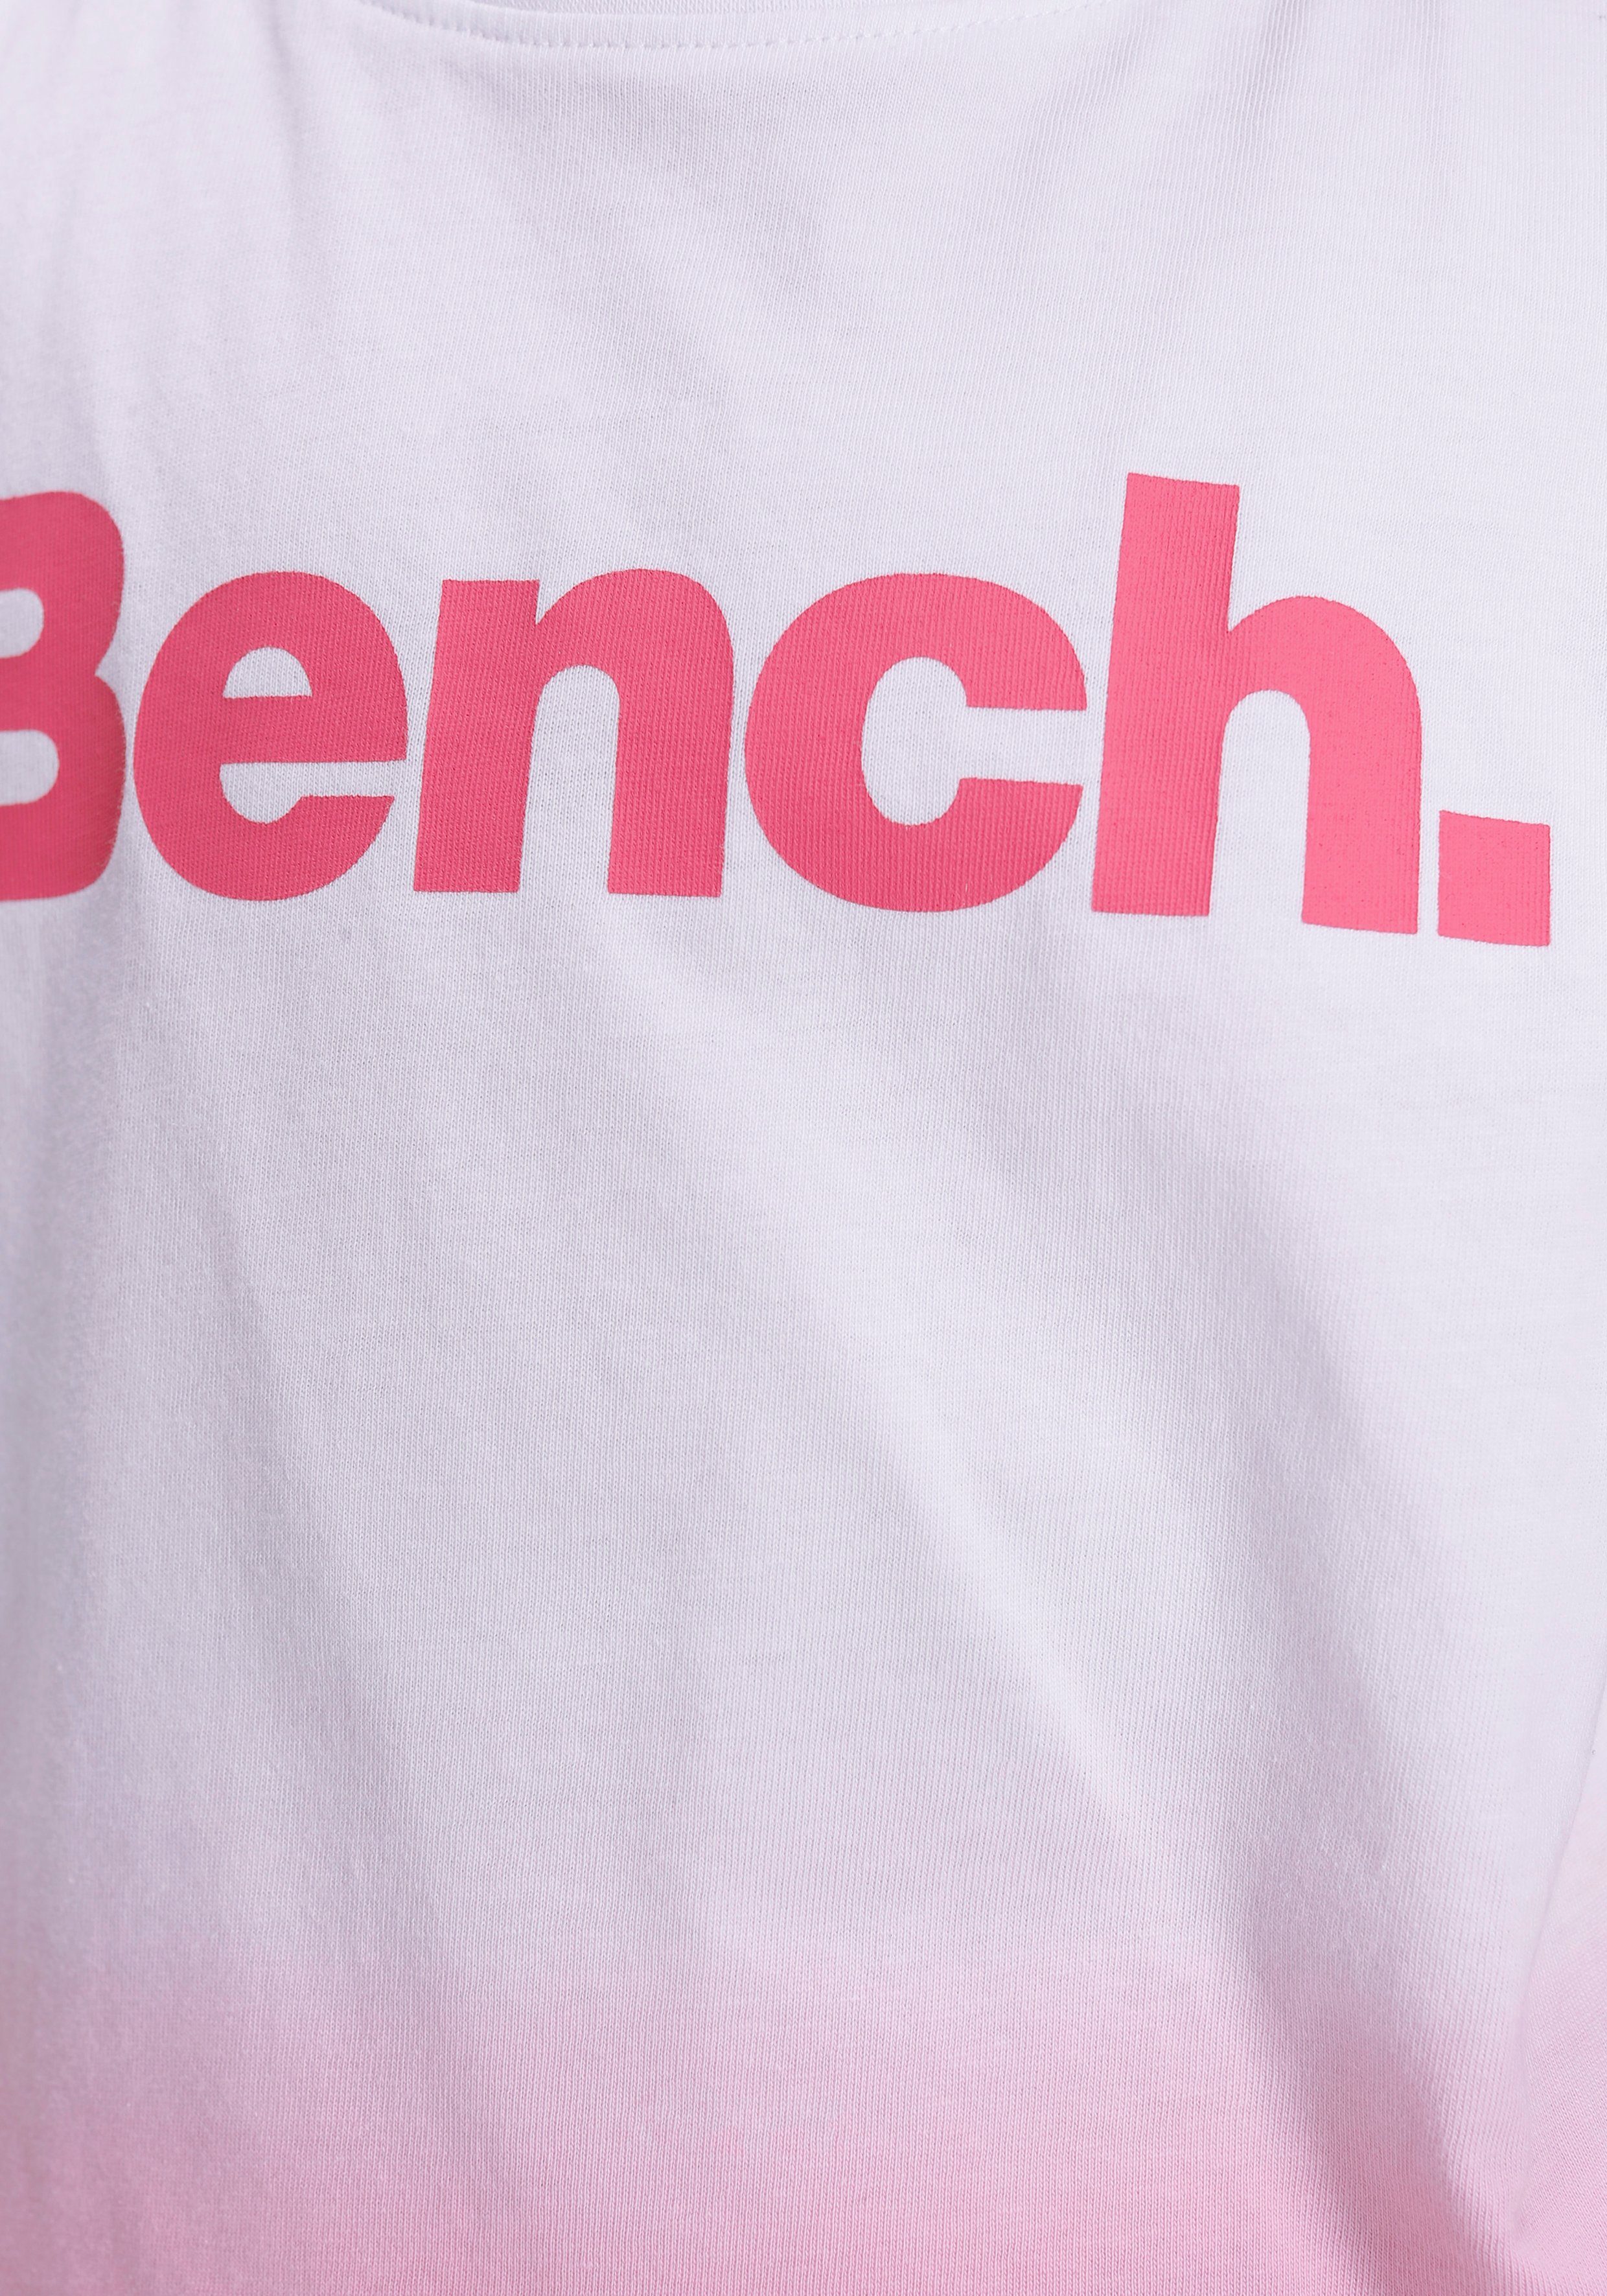 T-Shirt Bench. Form kurze Farbverlauf grade